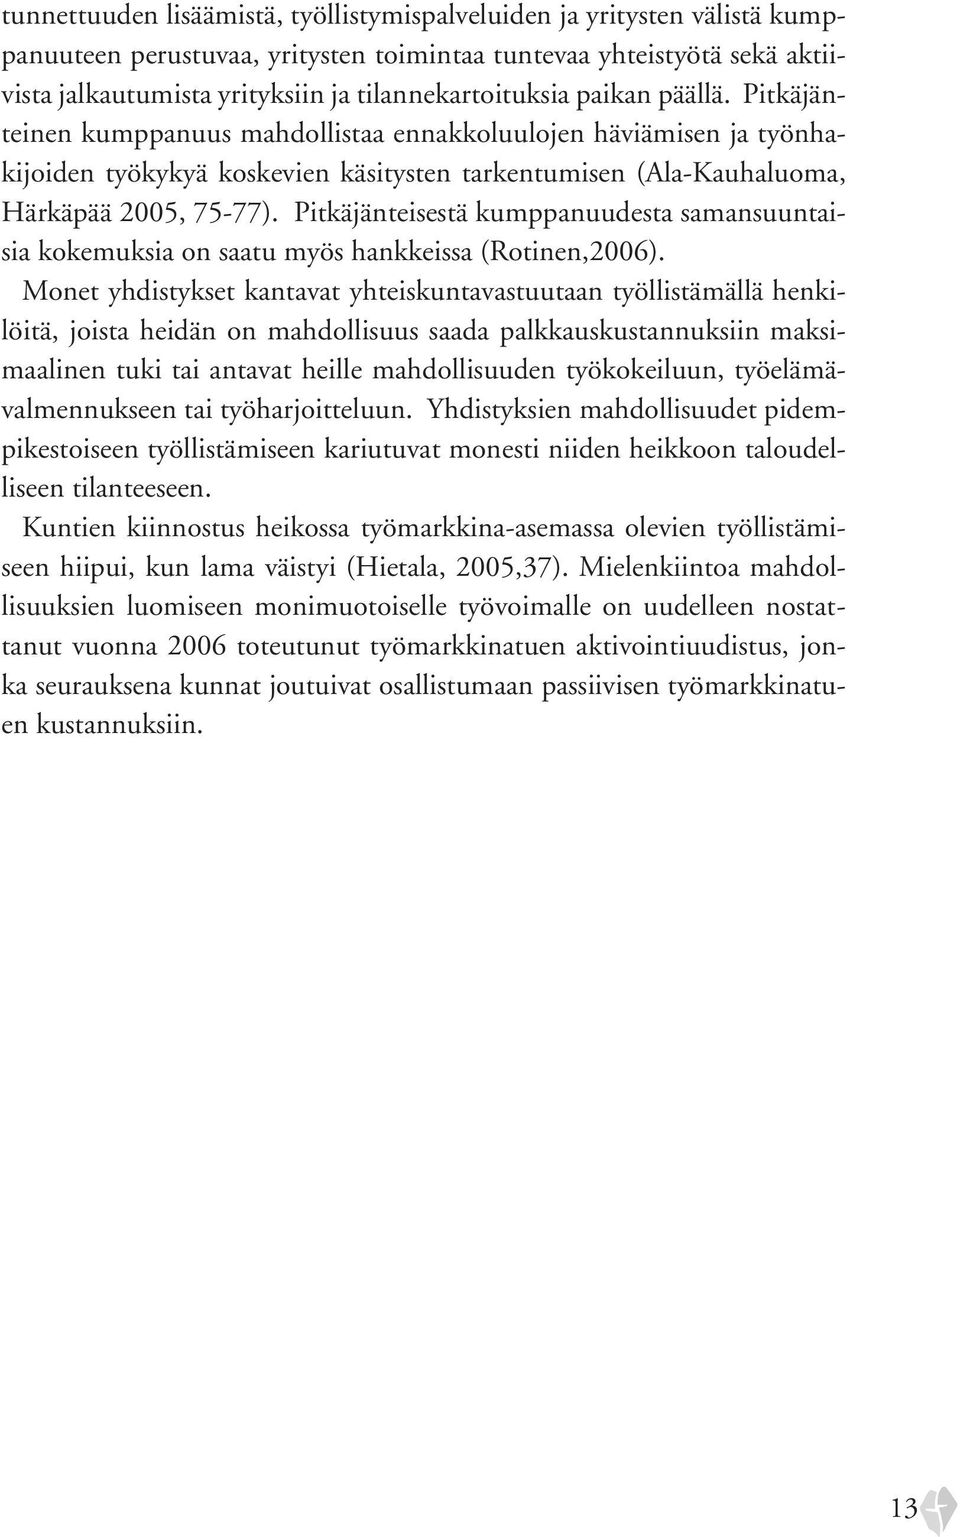 Pitkäjänteinen kumppanuus mahdollistaa ennakkoluulojen häviämisen ja työnhakijoiden työkykyä koskevien käsitysten tarkentumisen (Ala-Kauhaluoma, Härkäpää 2005, 75-77).